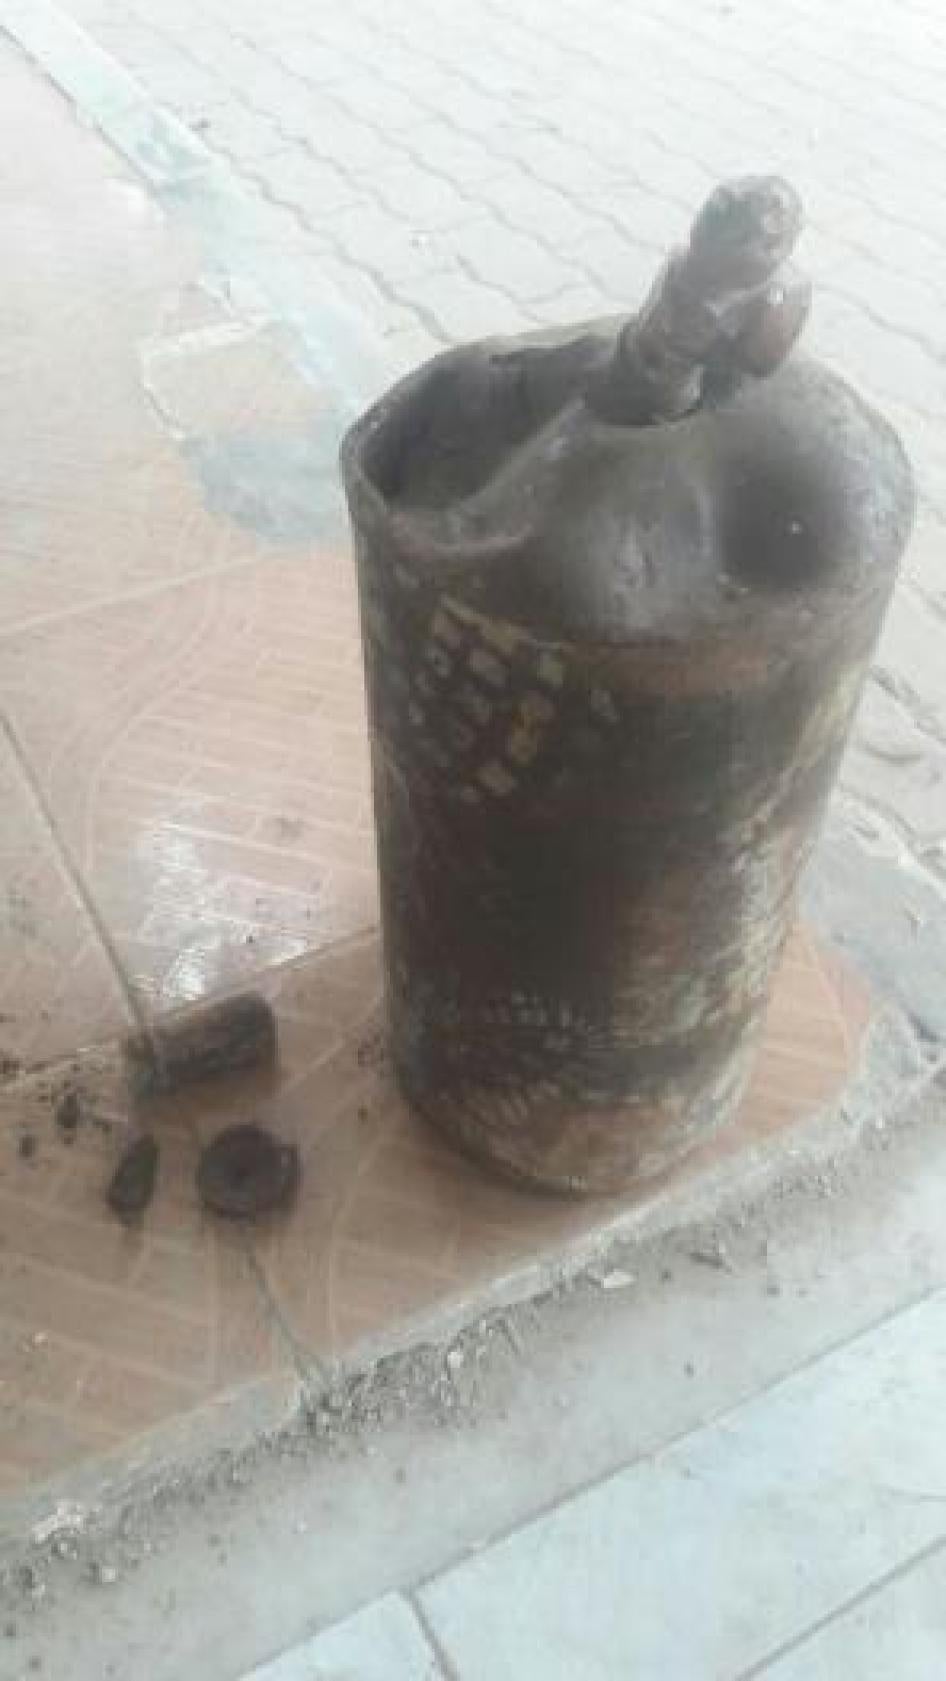 أسطوانة غاز مشوهة عثر عليها عضو في الدفاع المدني السوري في موقع هجوم 29 مارس/آذار في حي القابون شرق دمشق الذي تسيطر عليه جماعات مسلحة تقاتل الحكومة. 